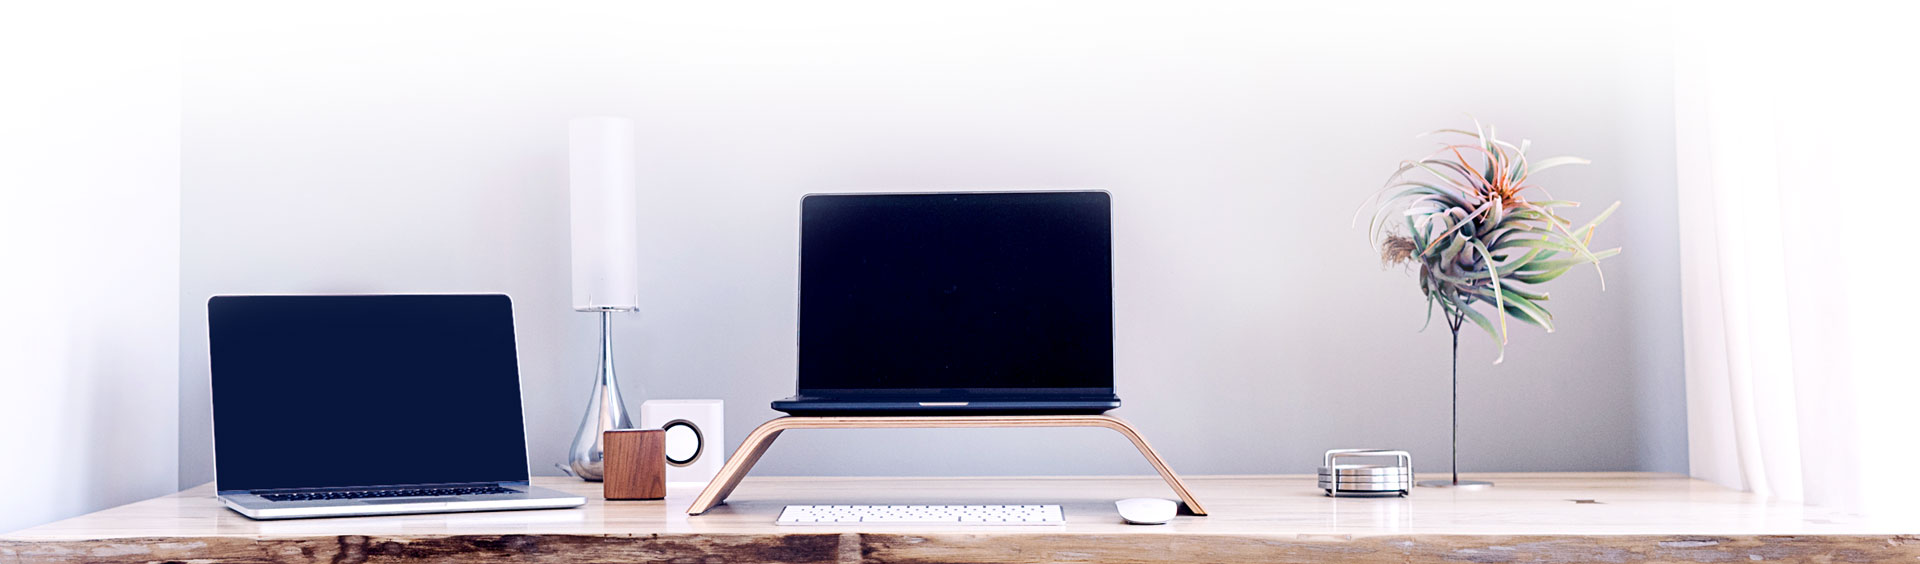 Laptop setup for digital marketing freelancer